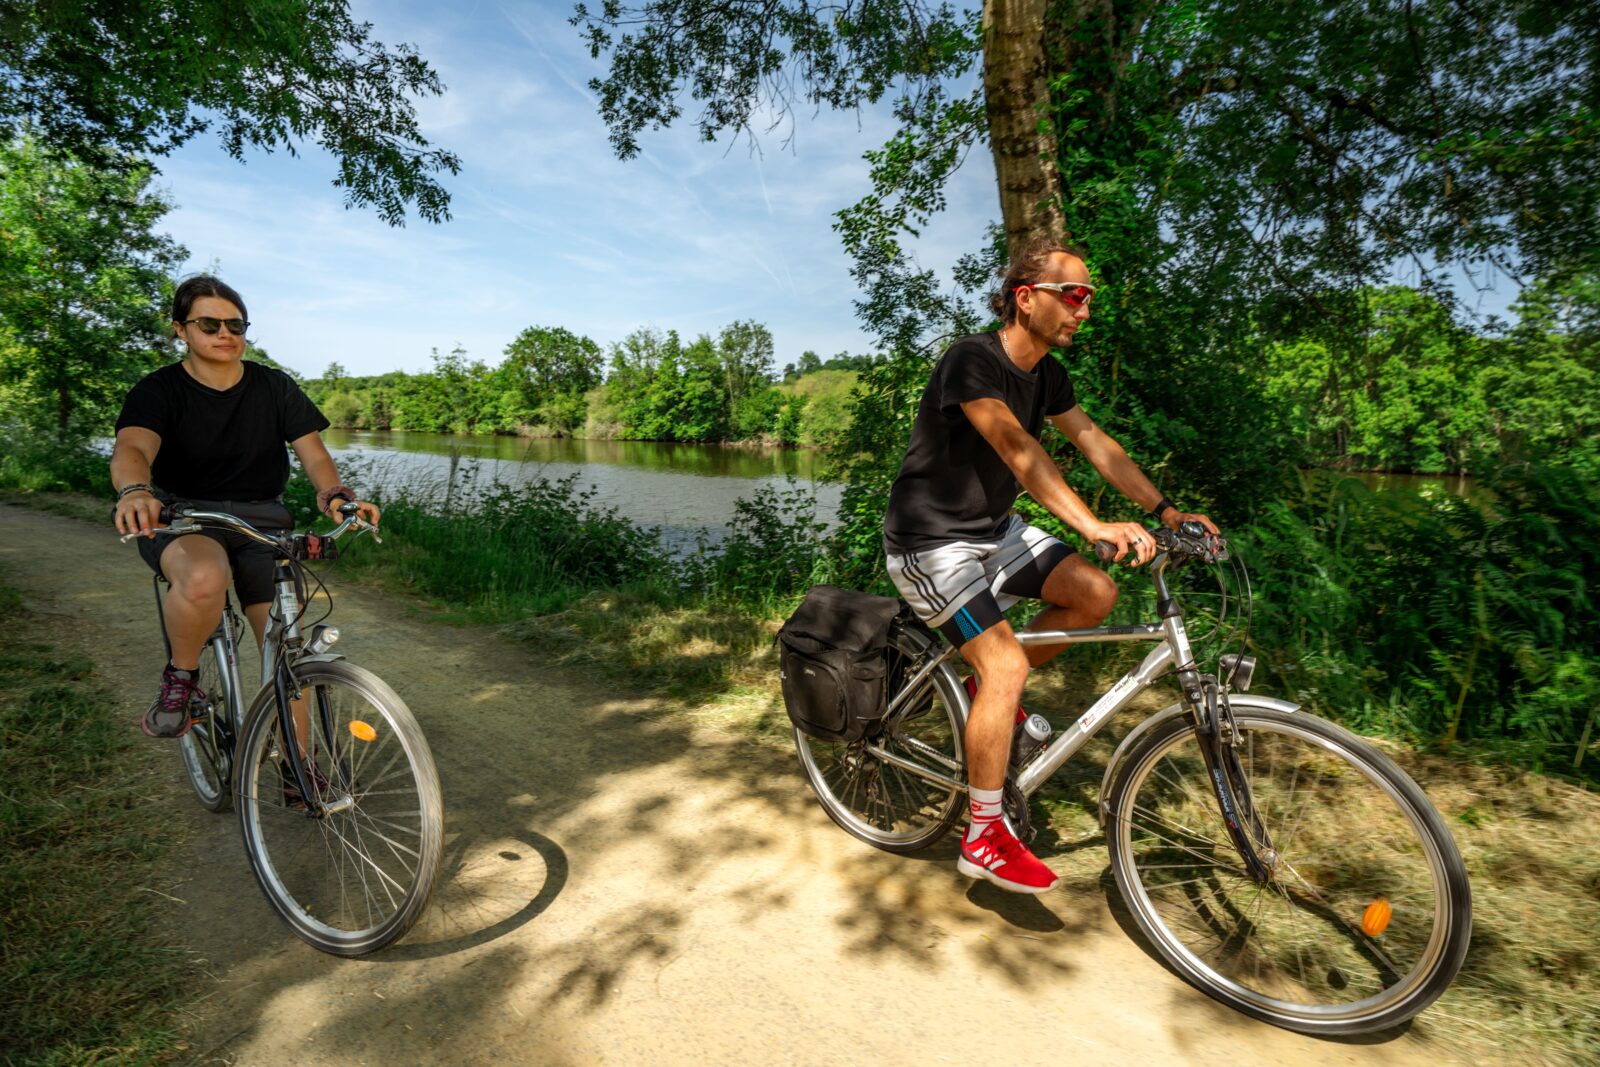 Anjou Sport Nature activité vélo balade à vélo location de vélo bord de la mayenne chemin du halage voie verte entre Angers et Laval Vélofrancette randonnée vélo halage de la mayenne